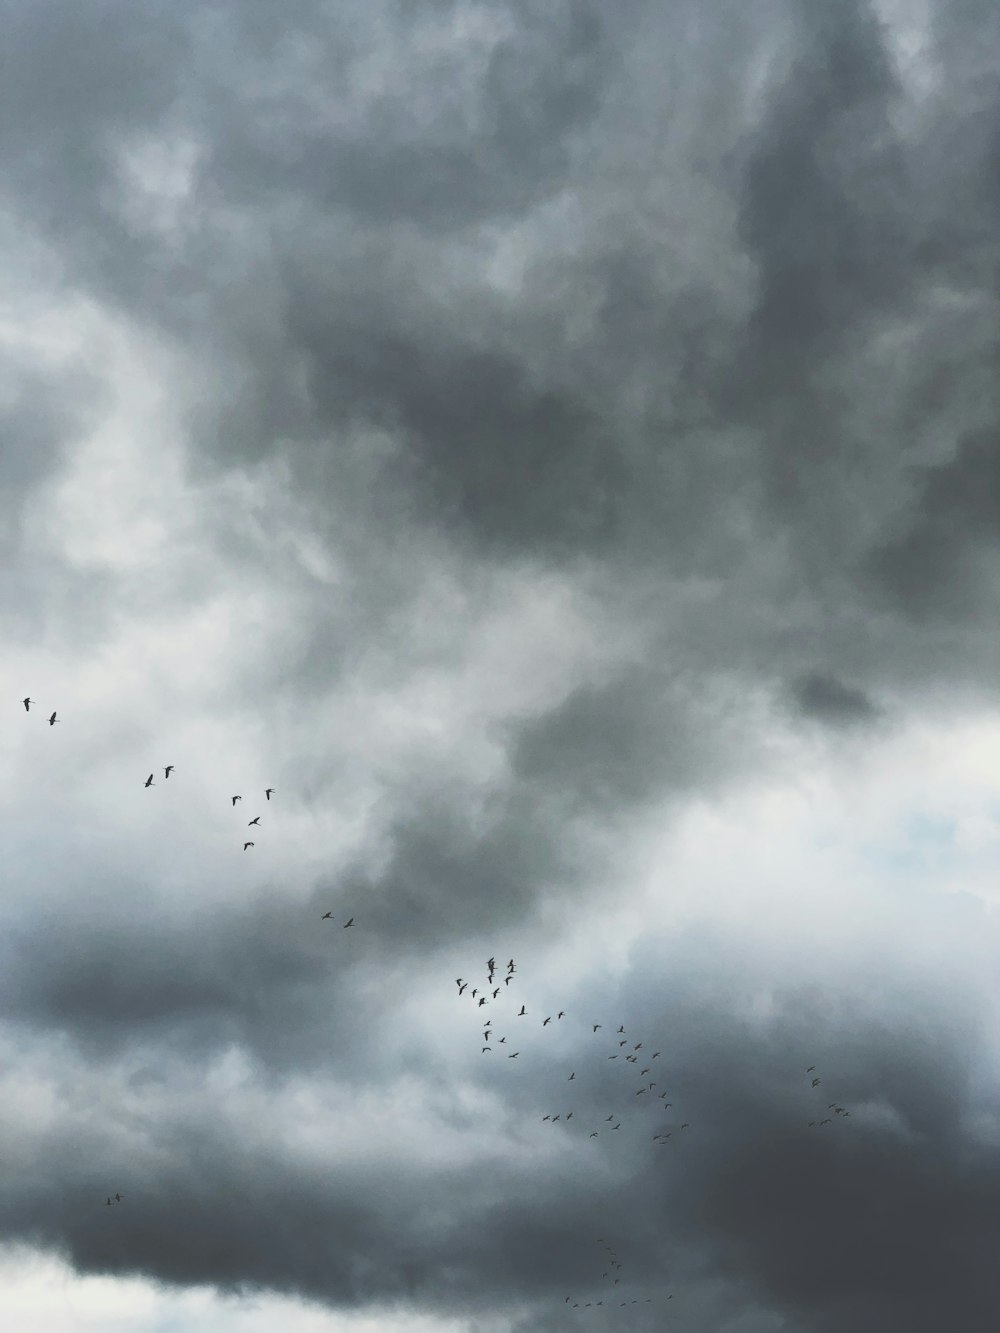 pájaros volando bajo nubes grises